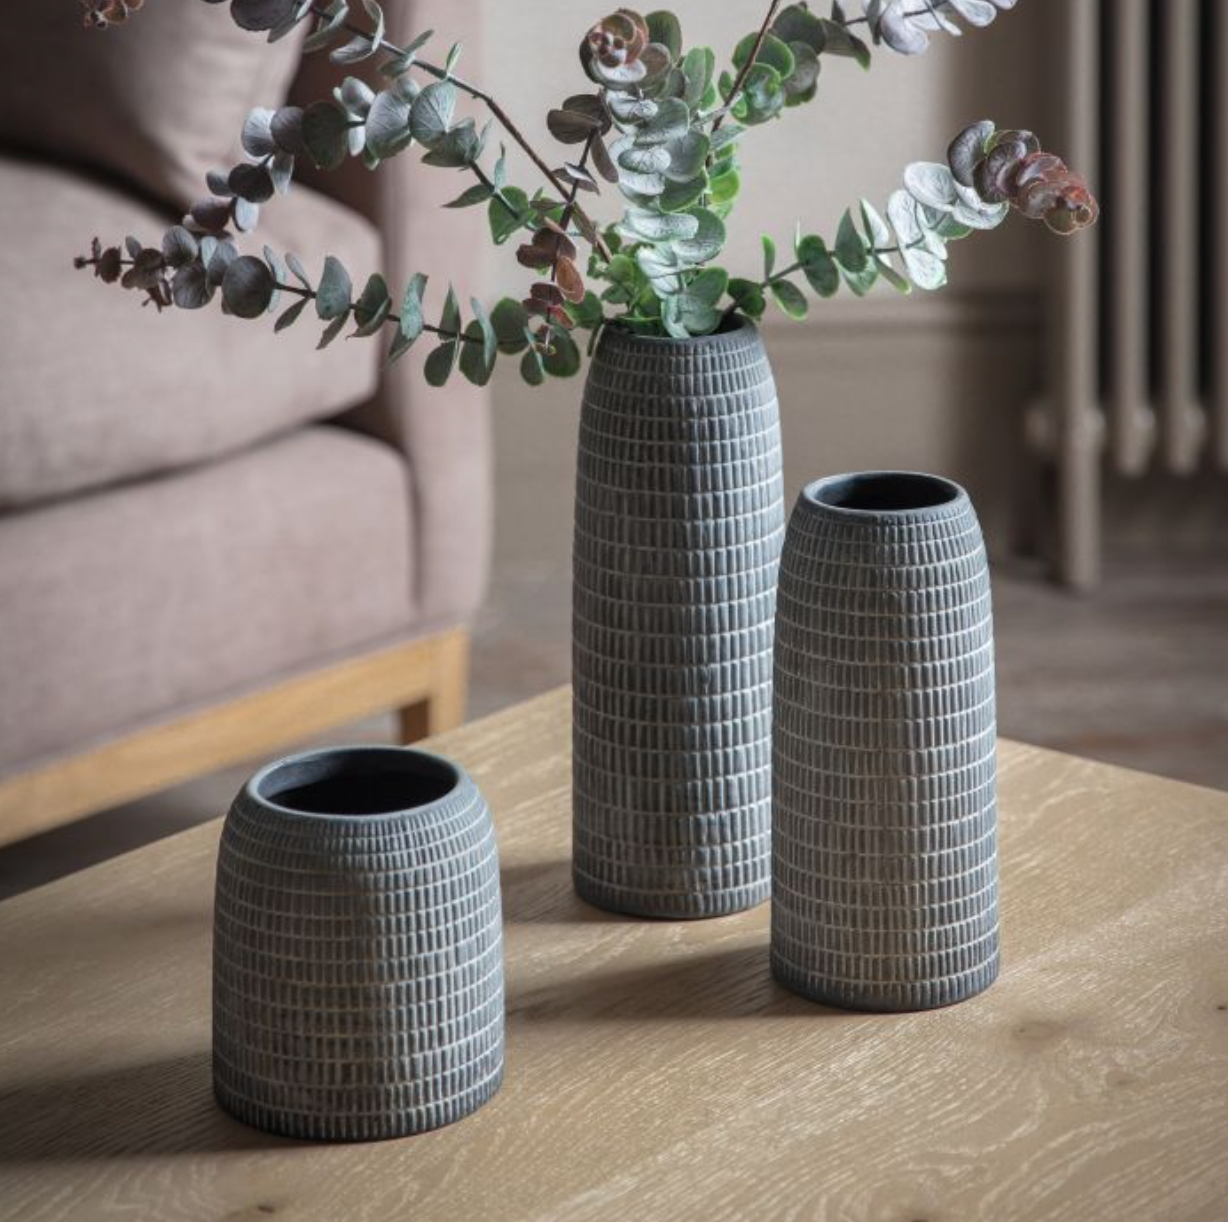 Set of 3 Corsico Grey Vases